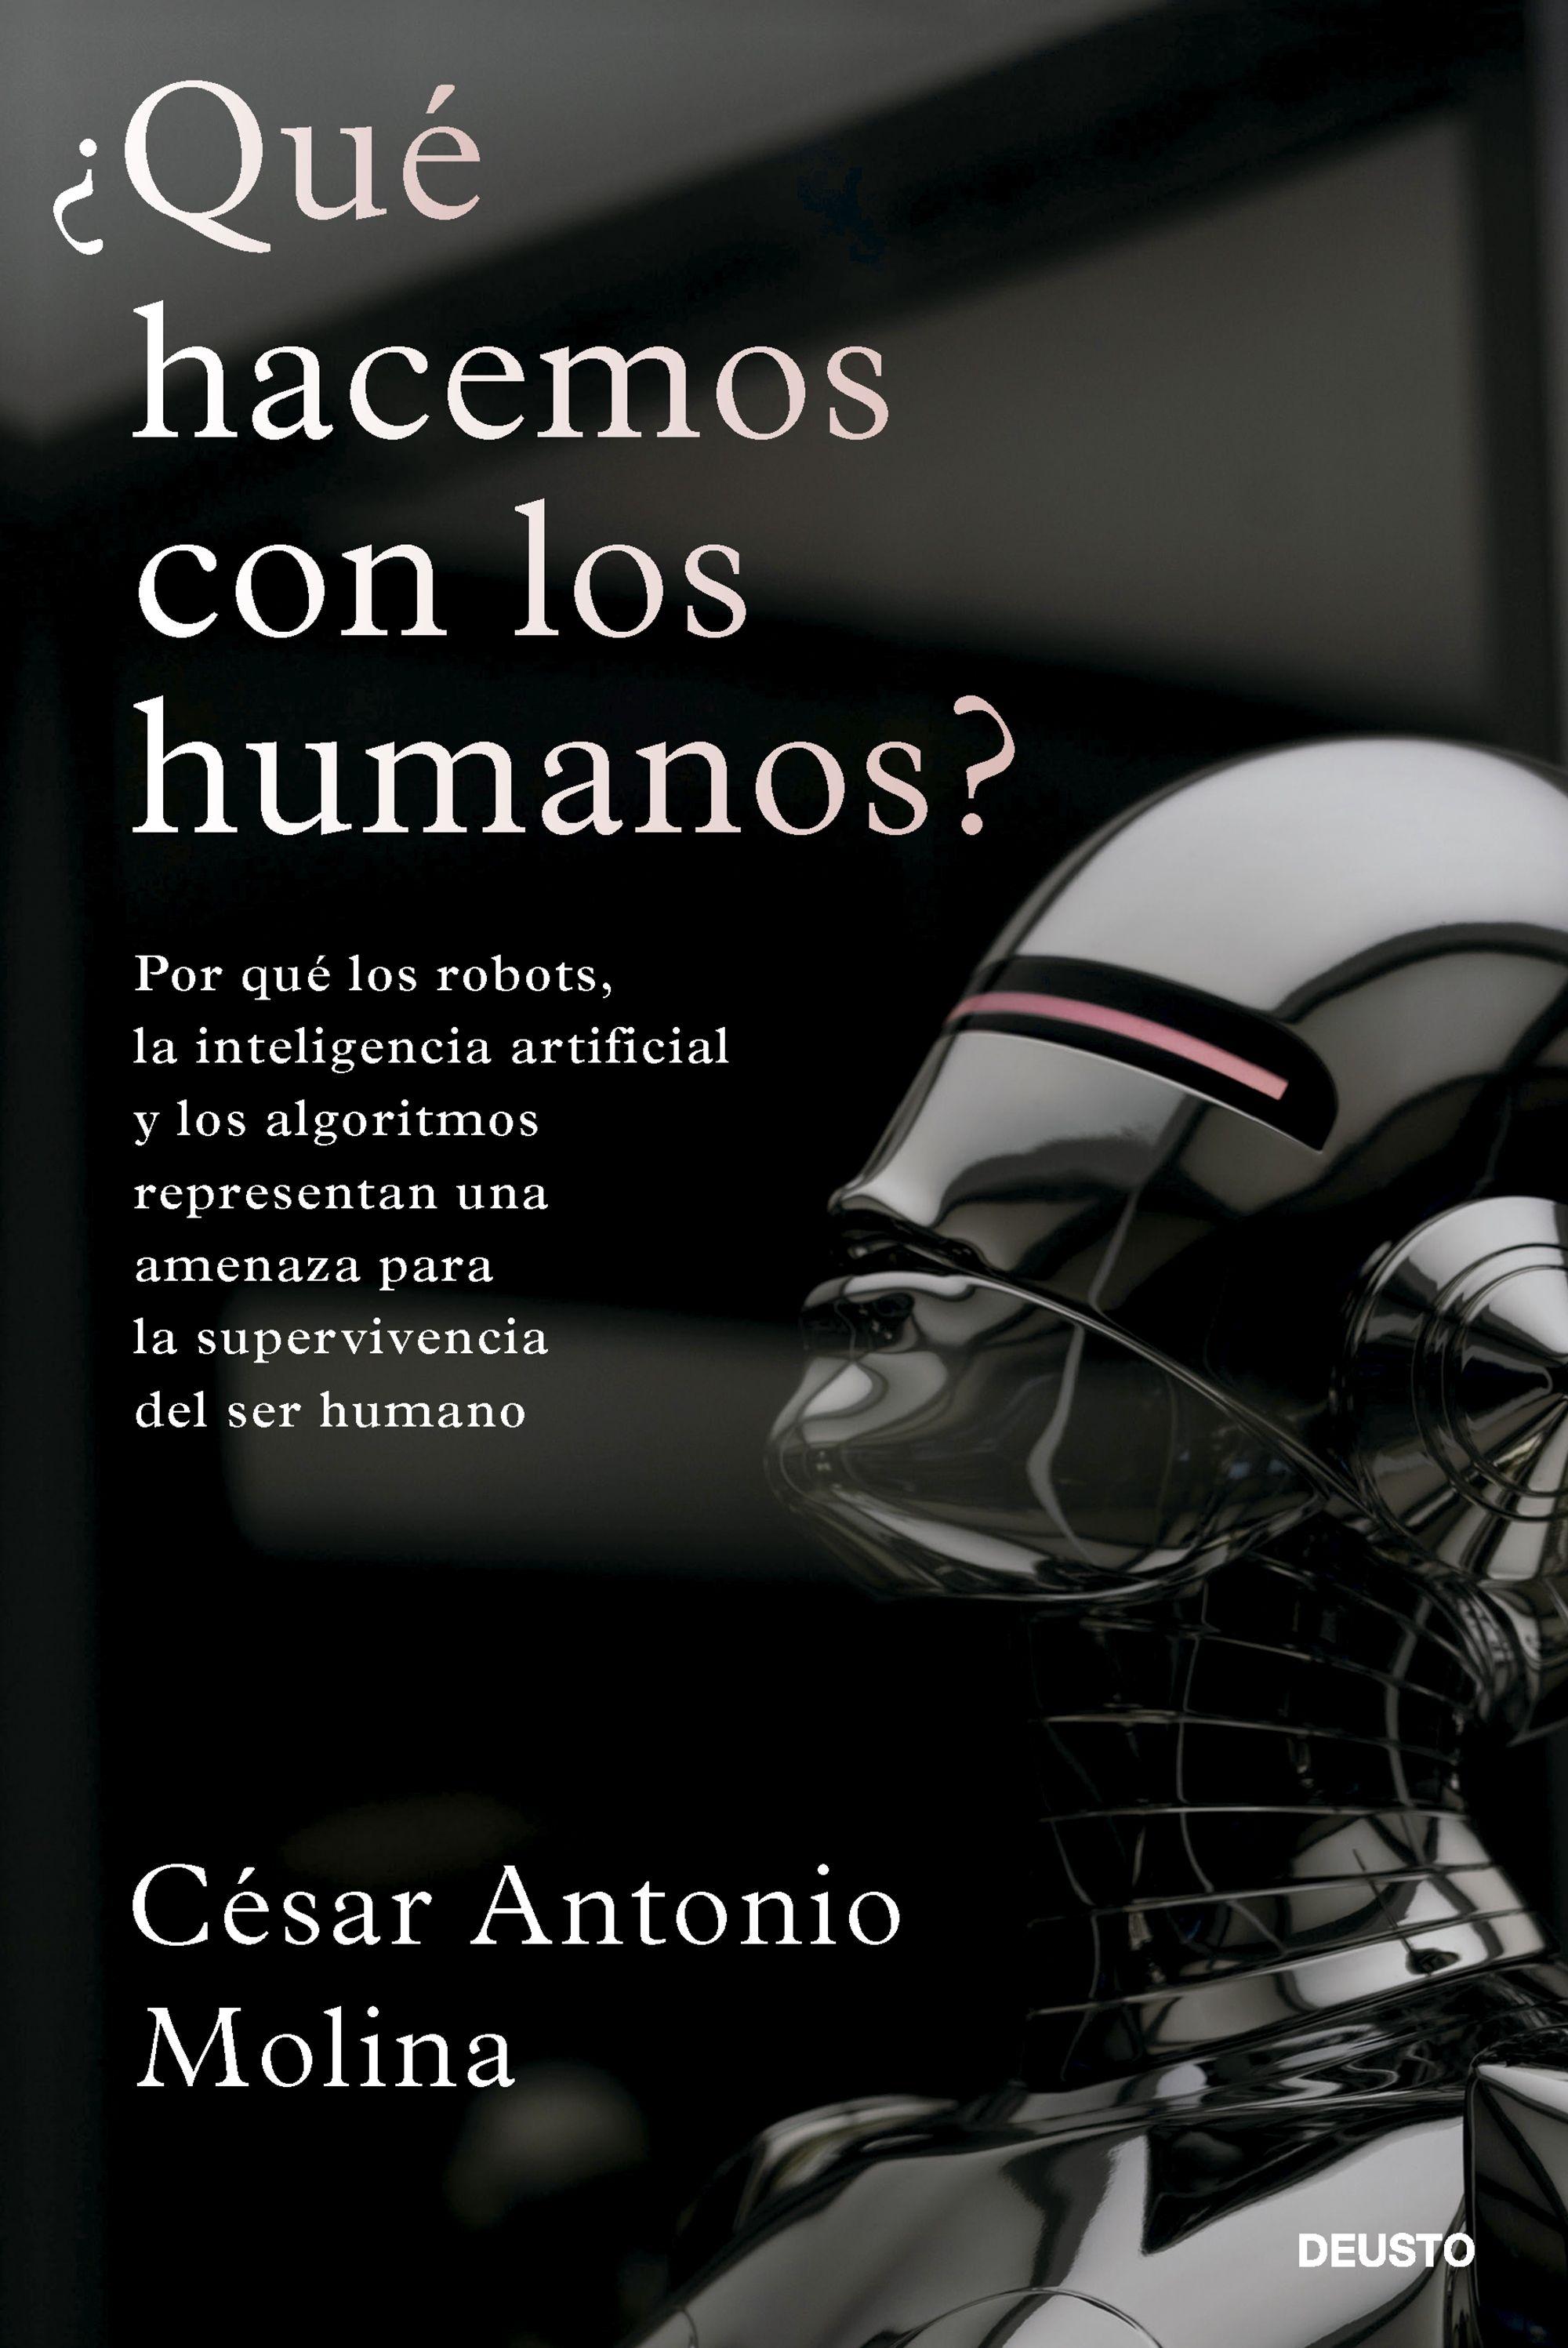 ¿Qué Hacemos con los Humanos? "Por que los Robots, la Inteligencia Artificial y los Algoritmos Represen"